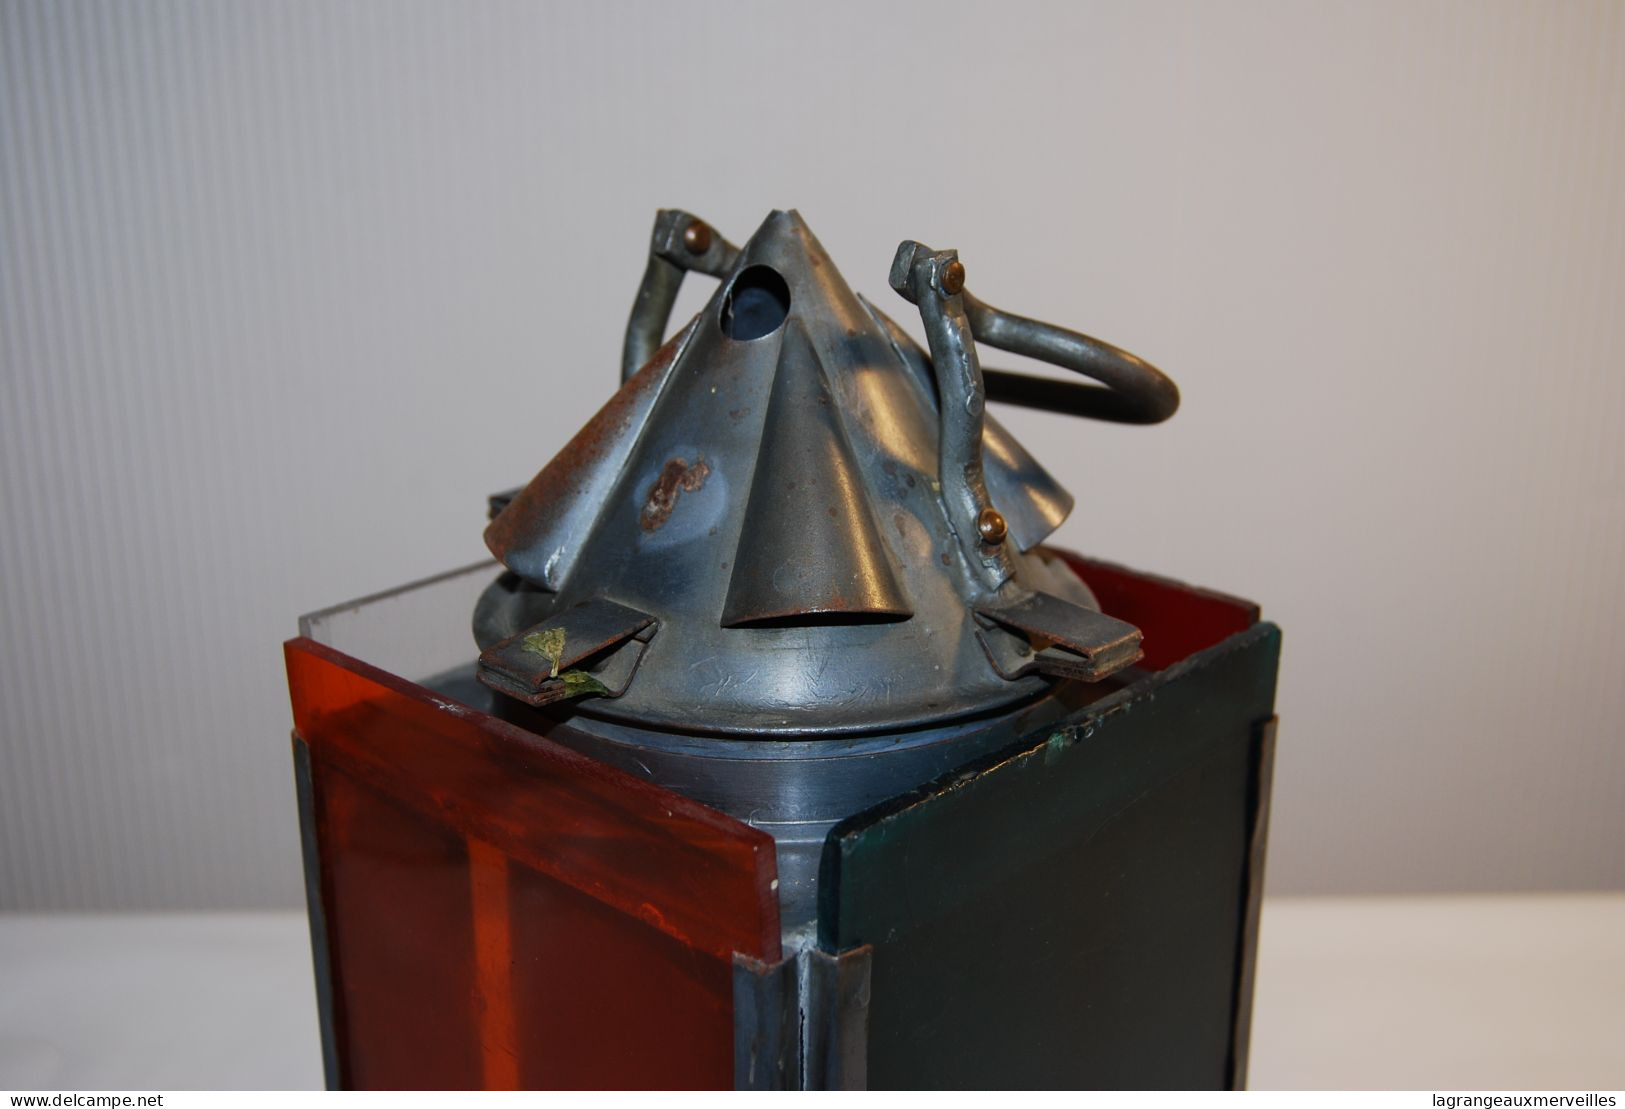 E2 Ancienne Lampe De Signalisation - Lampe Portable - 19501960 - Verre Plastique - Antike Werkzeuge